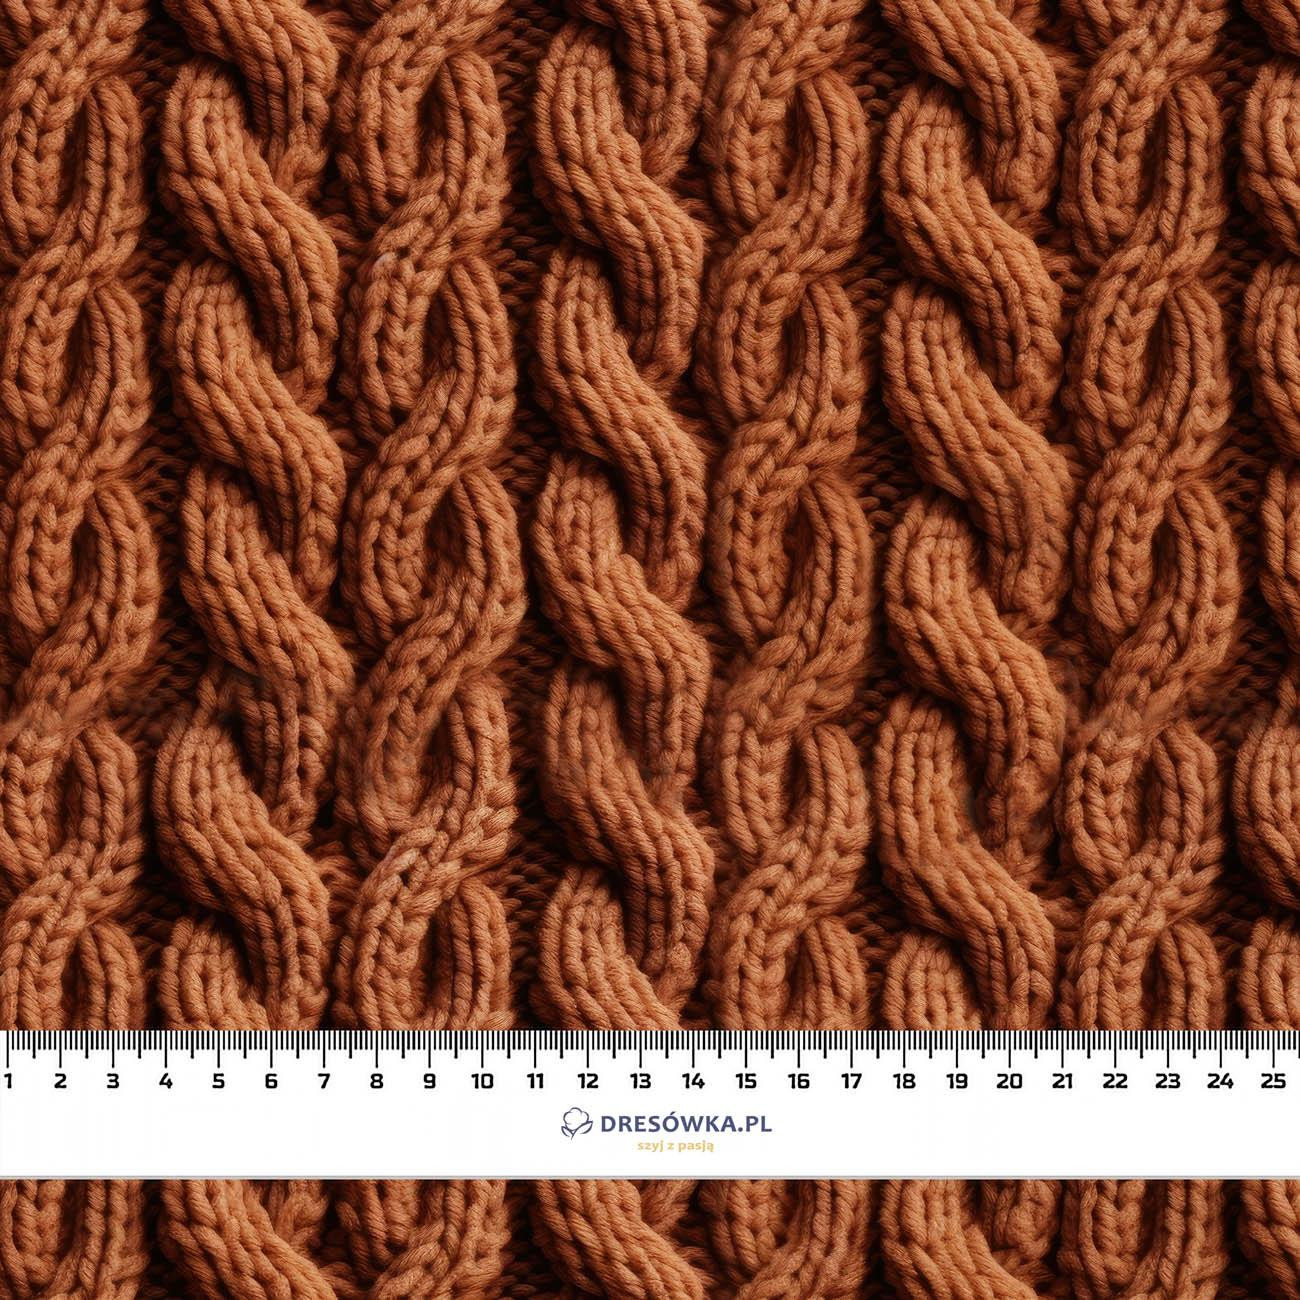 IMITATION SWEATER PAT. 2 - Hydrophobic brushed knit